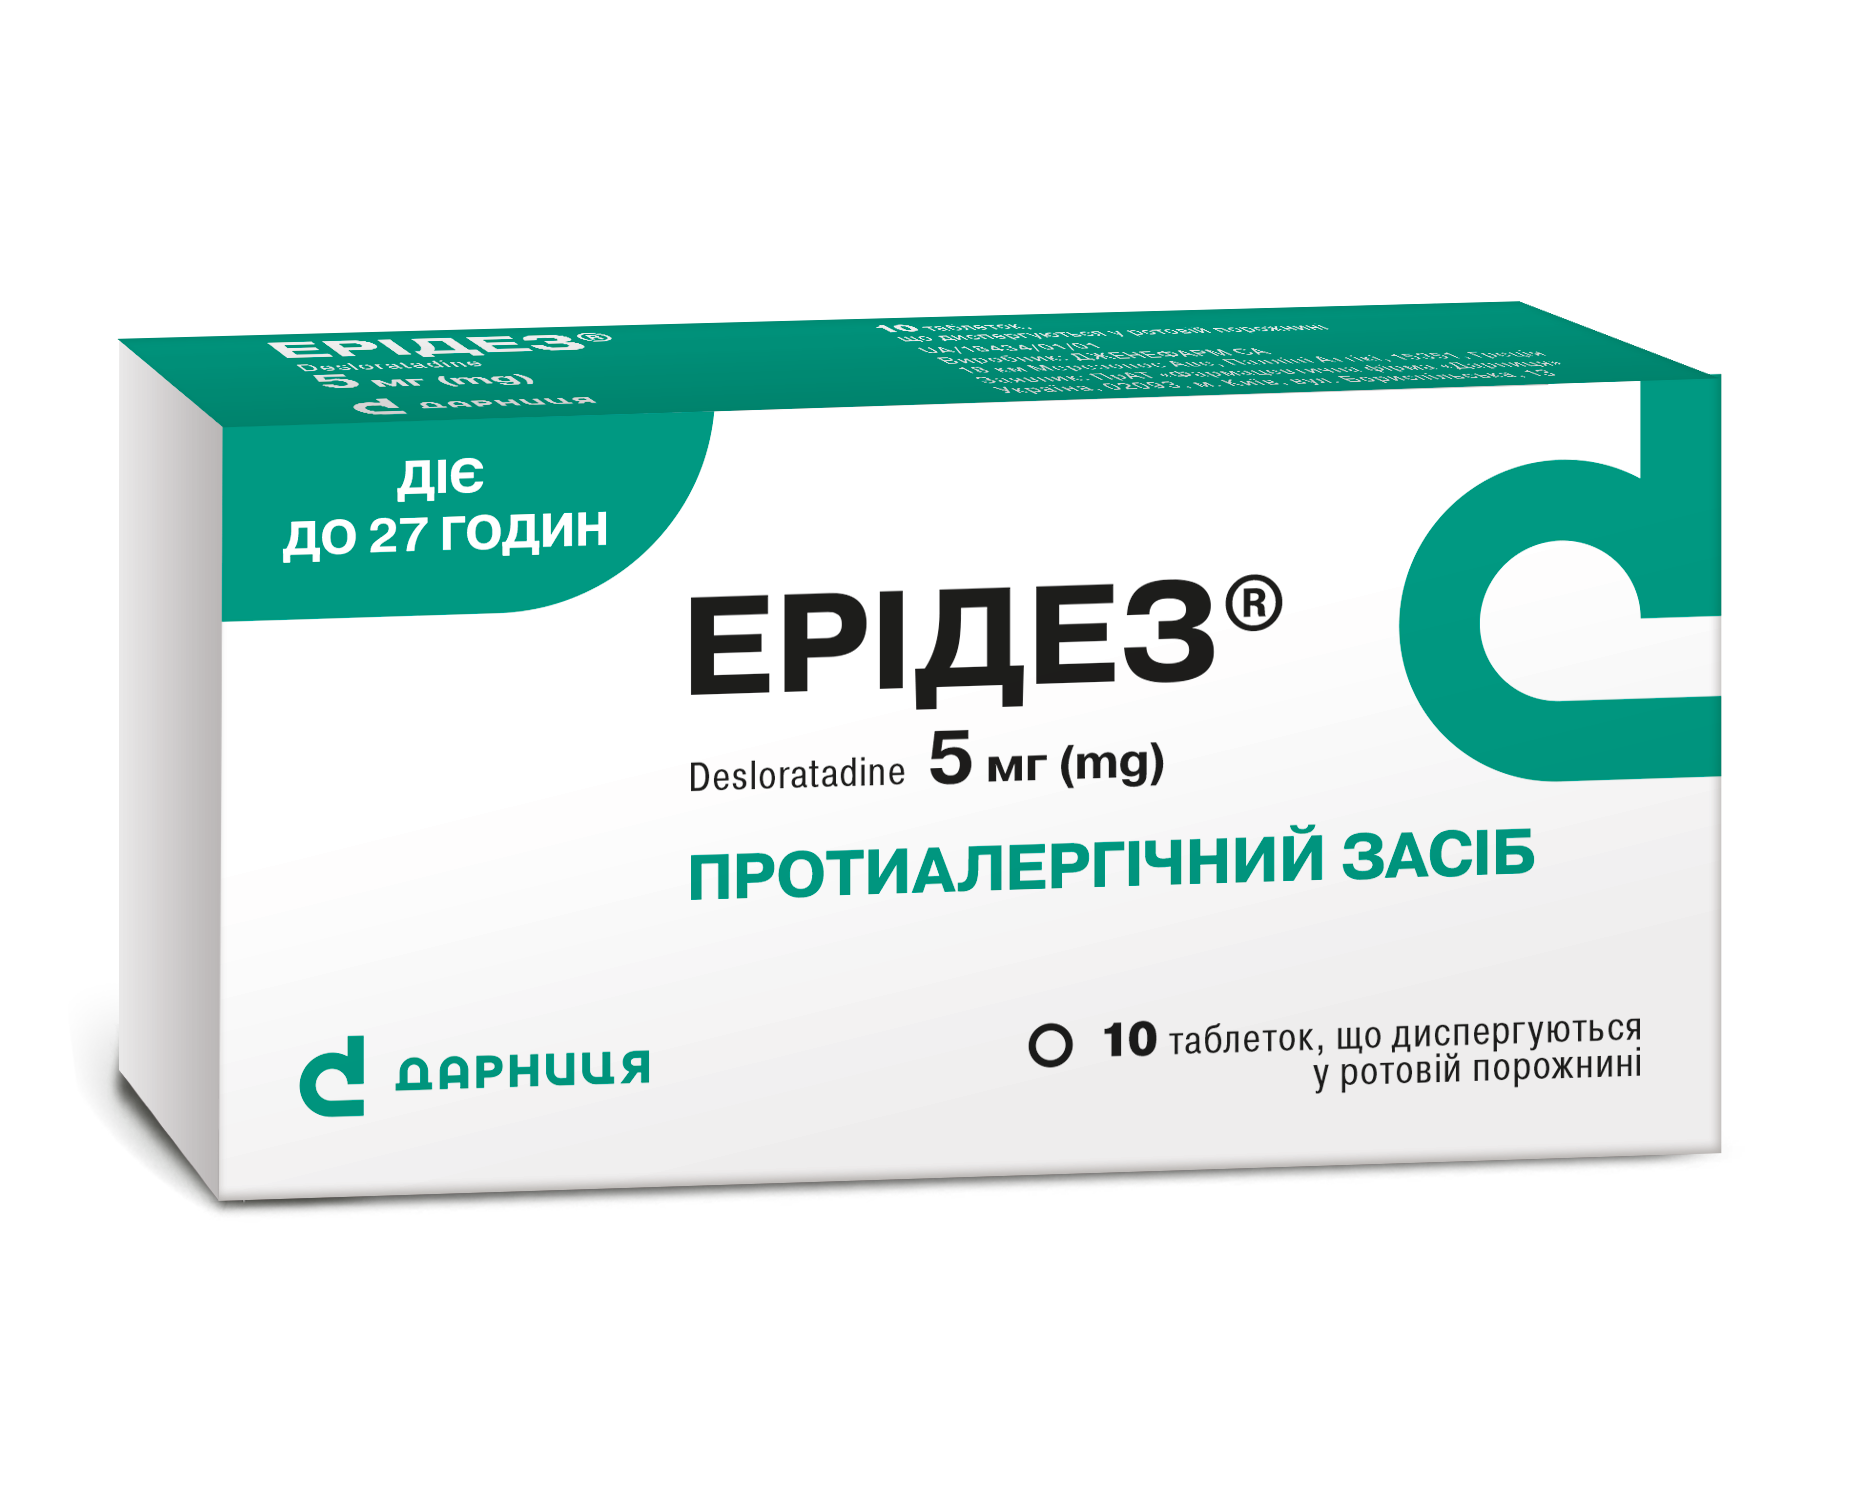 Эридез® (ородиспергируемые таблетки)